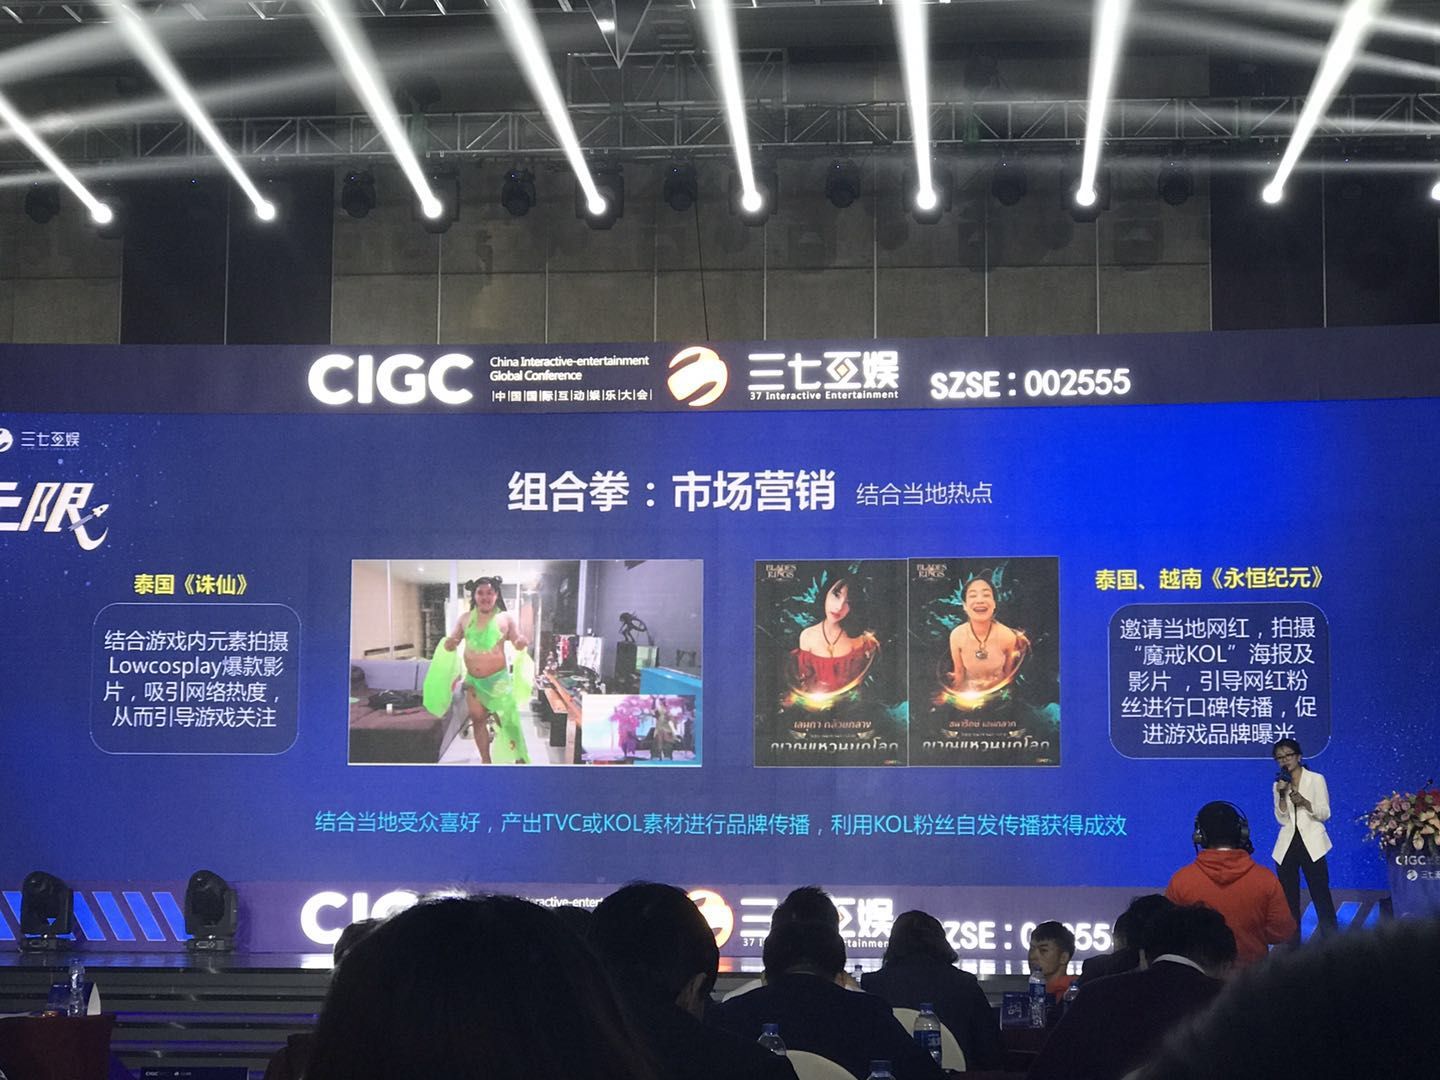 2018 年 CIGC，彭美介绍组合拳里的市场营销